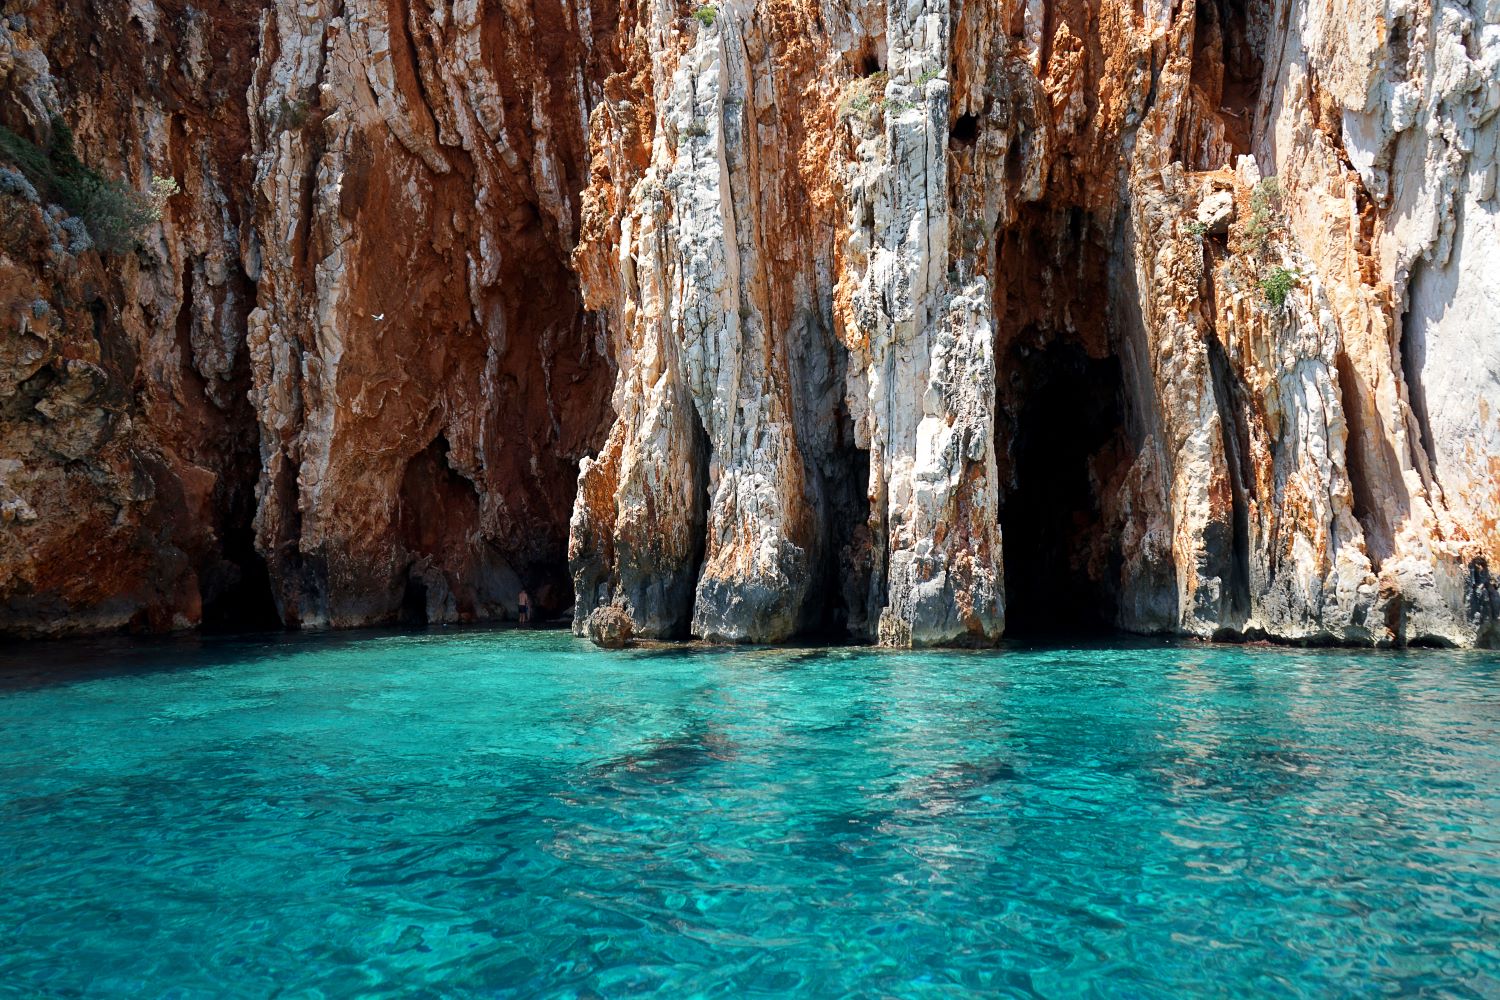 KNMtravel DMC, KNMexclusive, Croacia, Pakleni islas, cueva azul